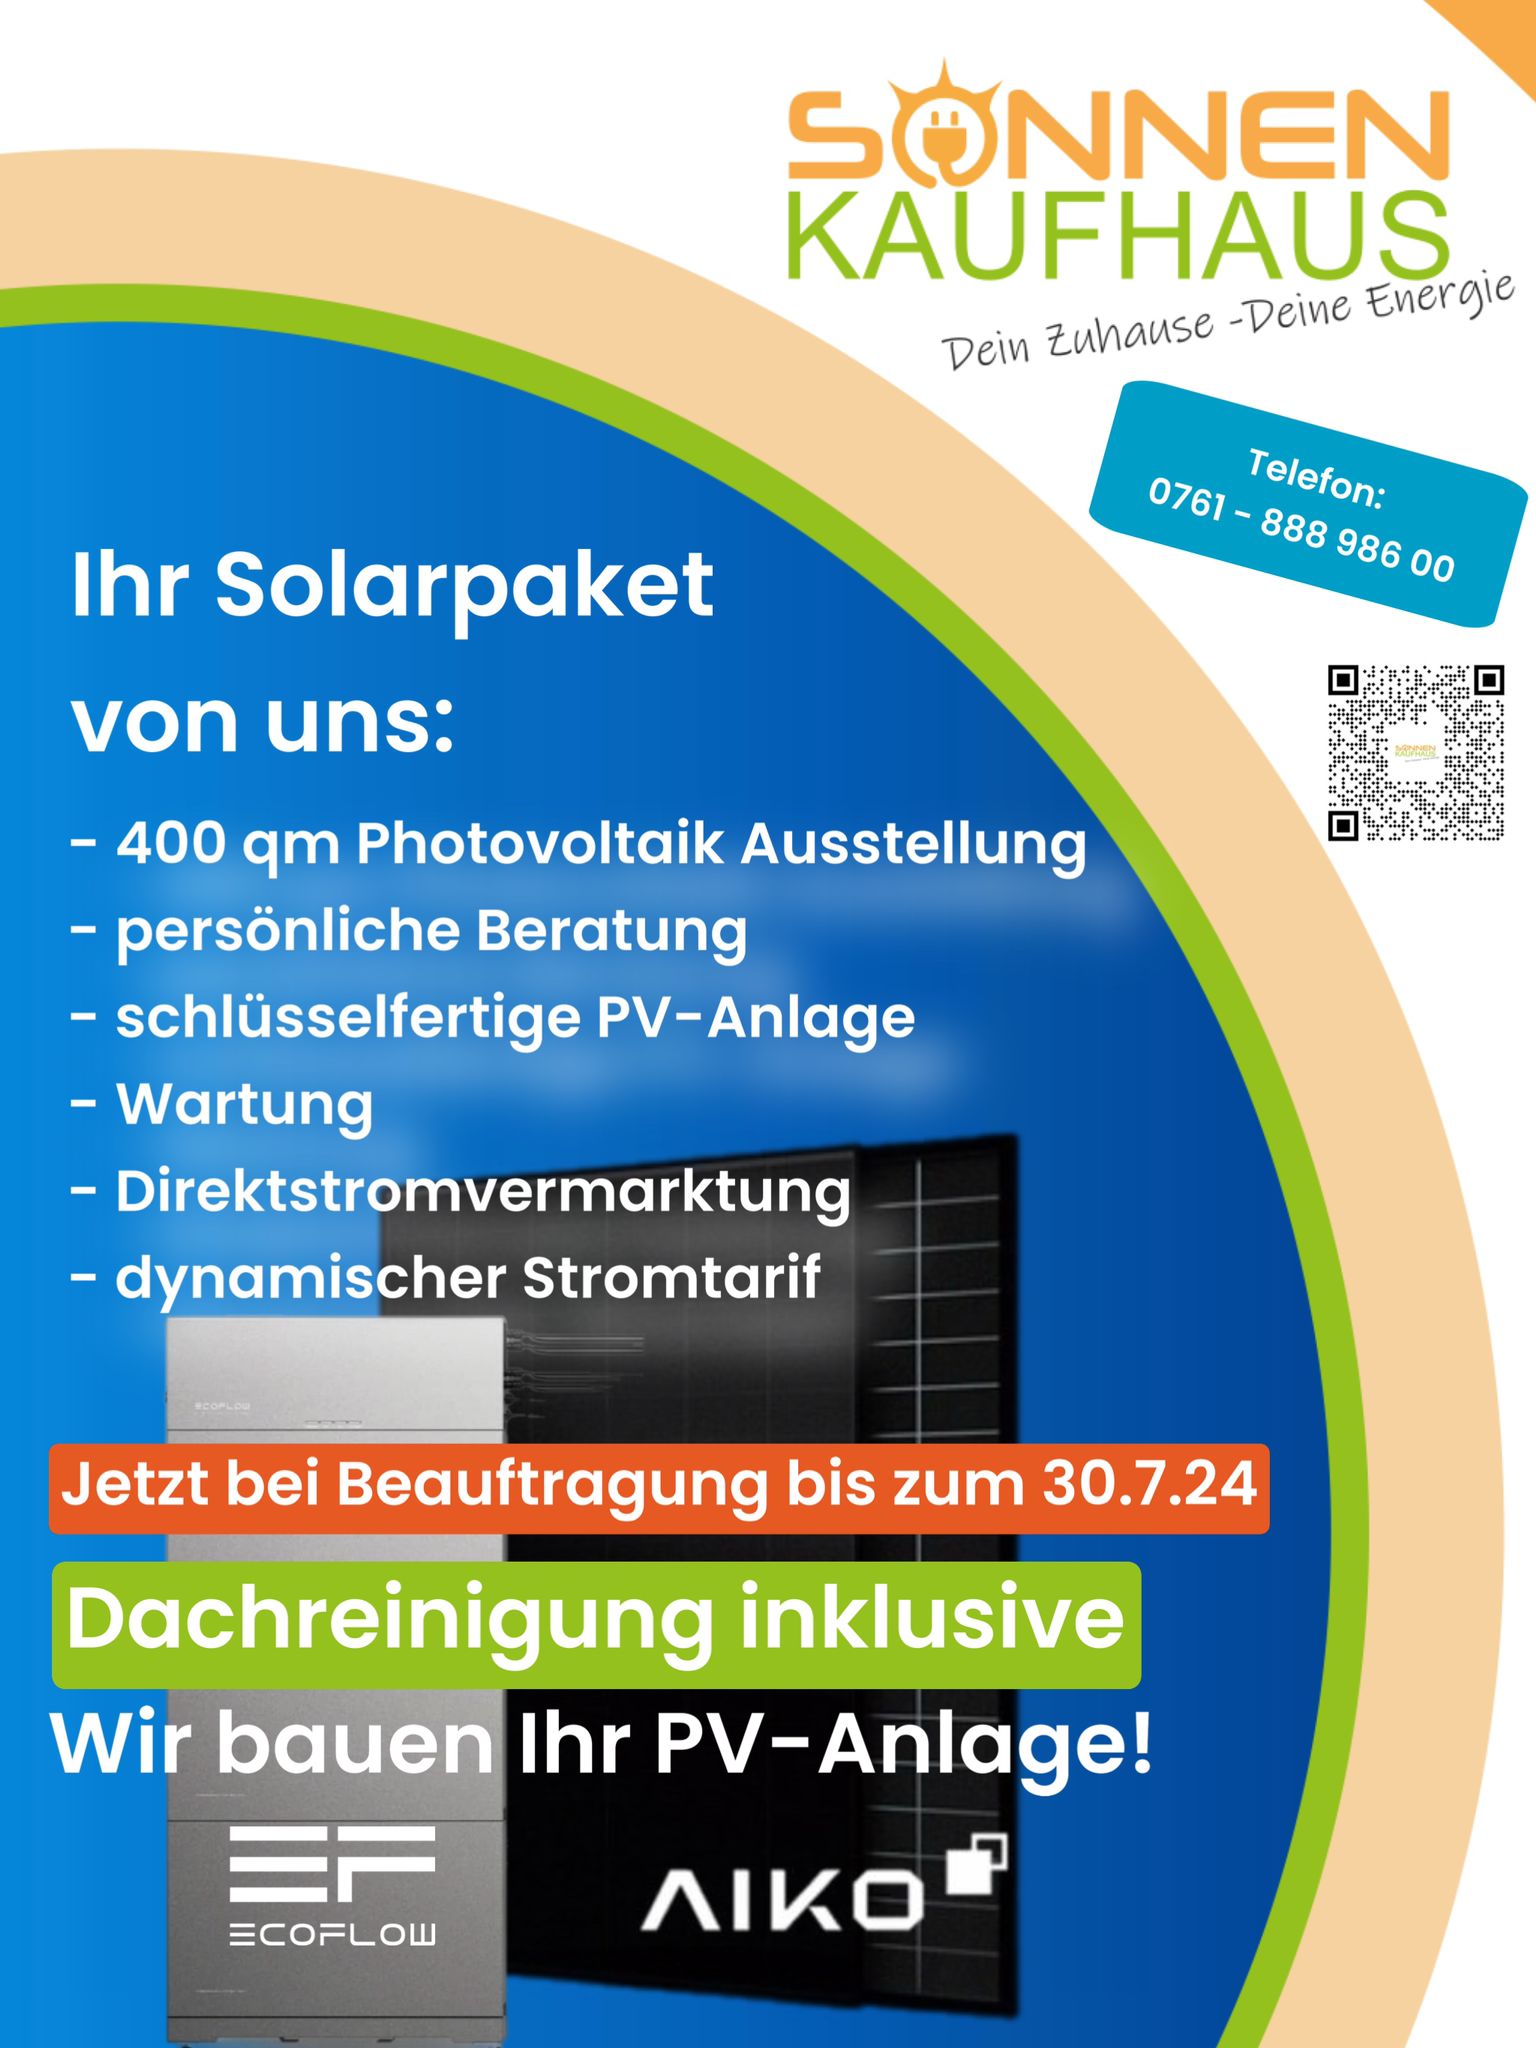 Sonnenkaufhaus Freiburg Photovoltaik Fachzentrum Freiburg und Lörrach Direktstromvermarktung , dynamischer Stromtarif, schlüsselfertige Solaranlage.